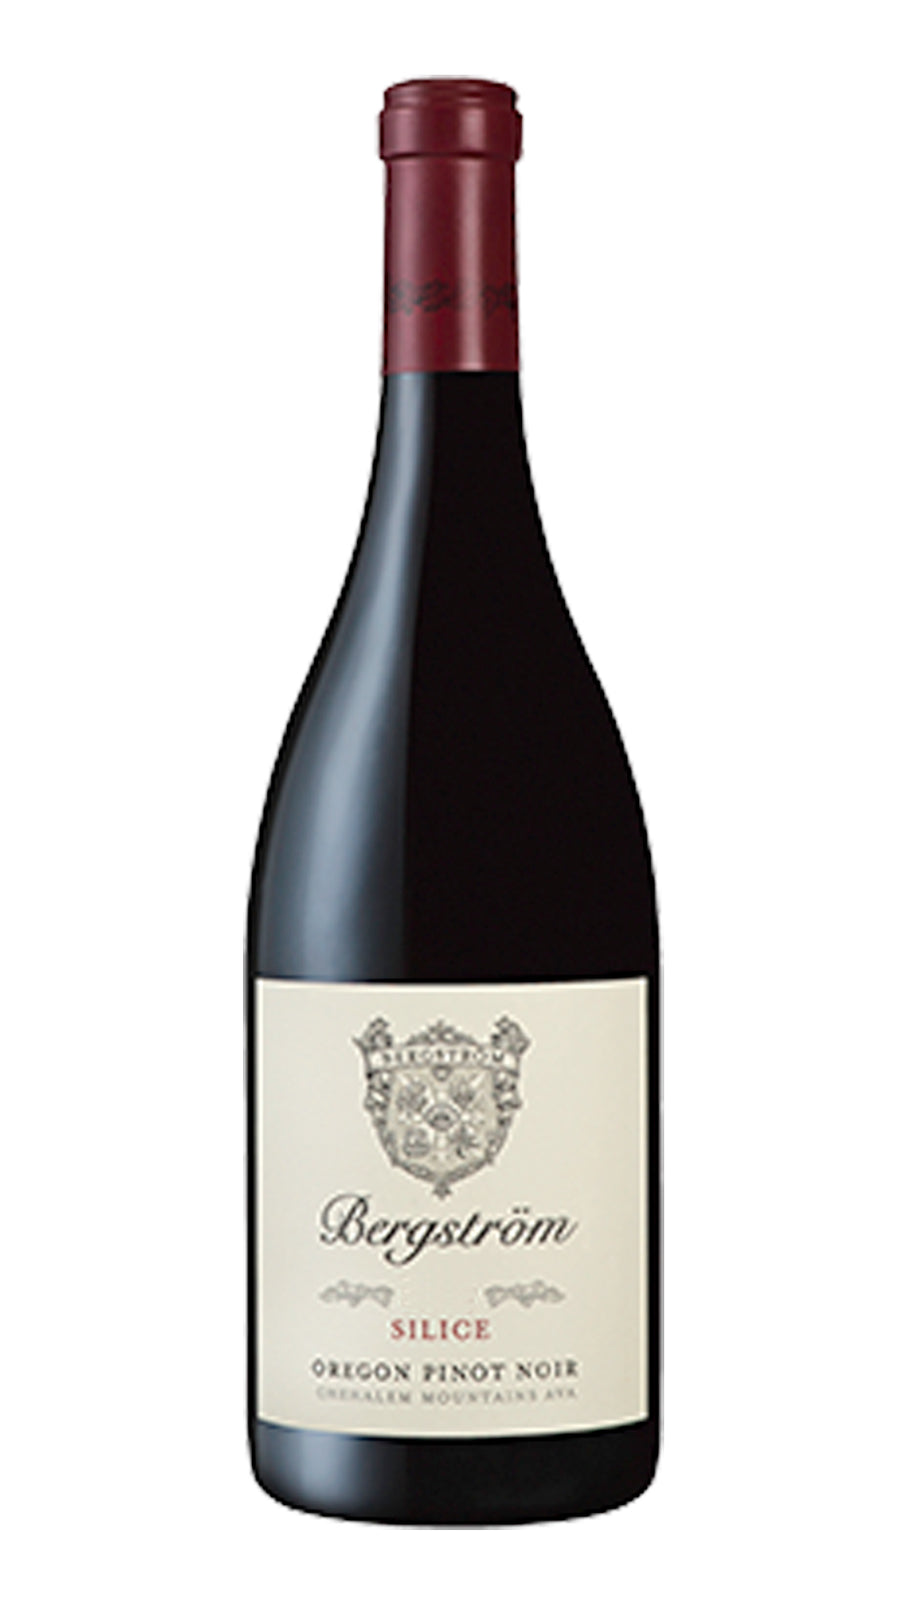 Bergström Pinot Noir 'Silice'